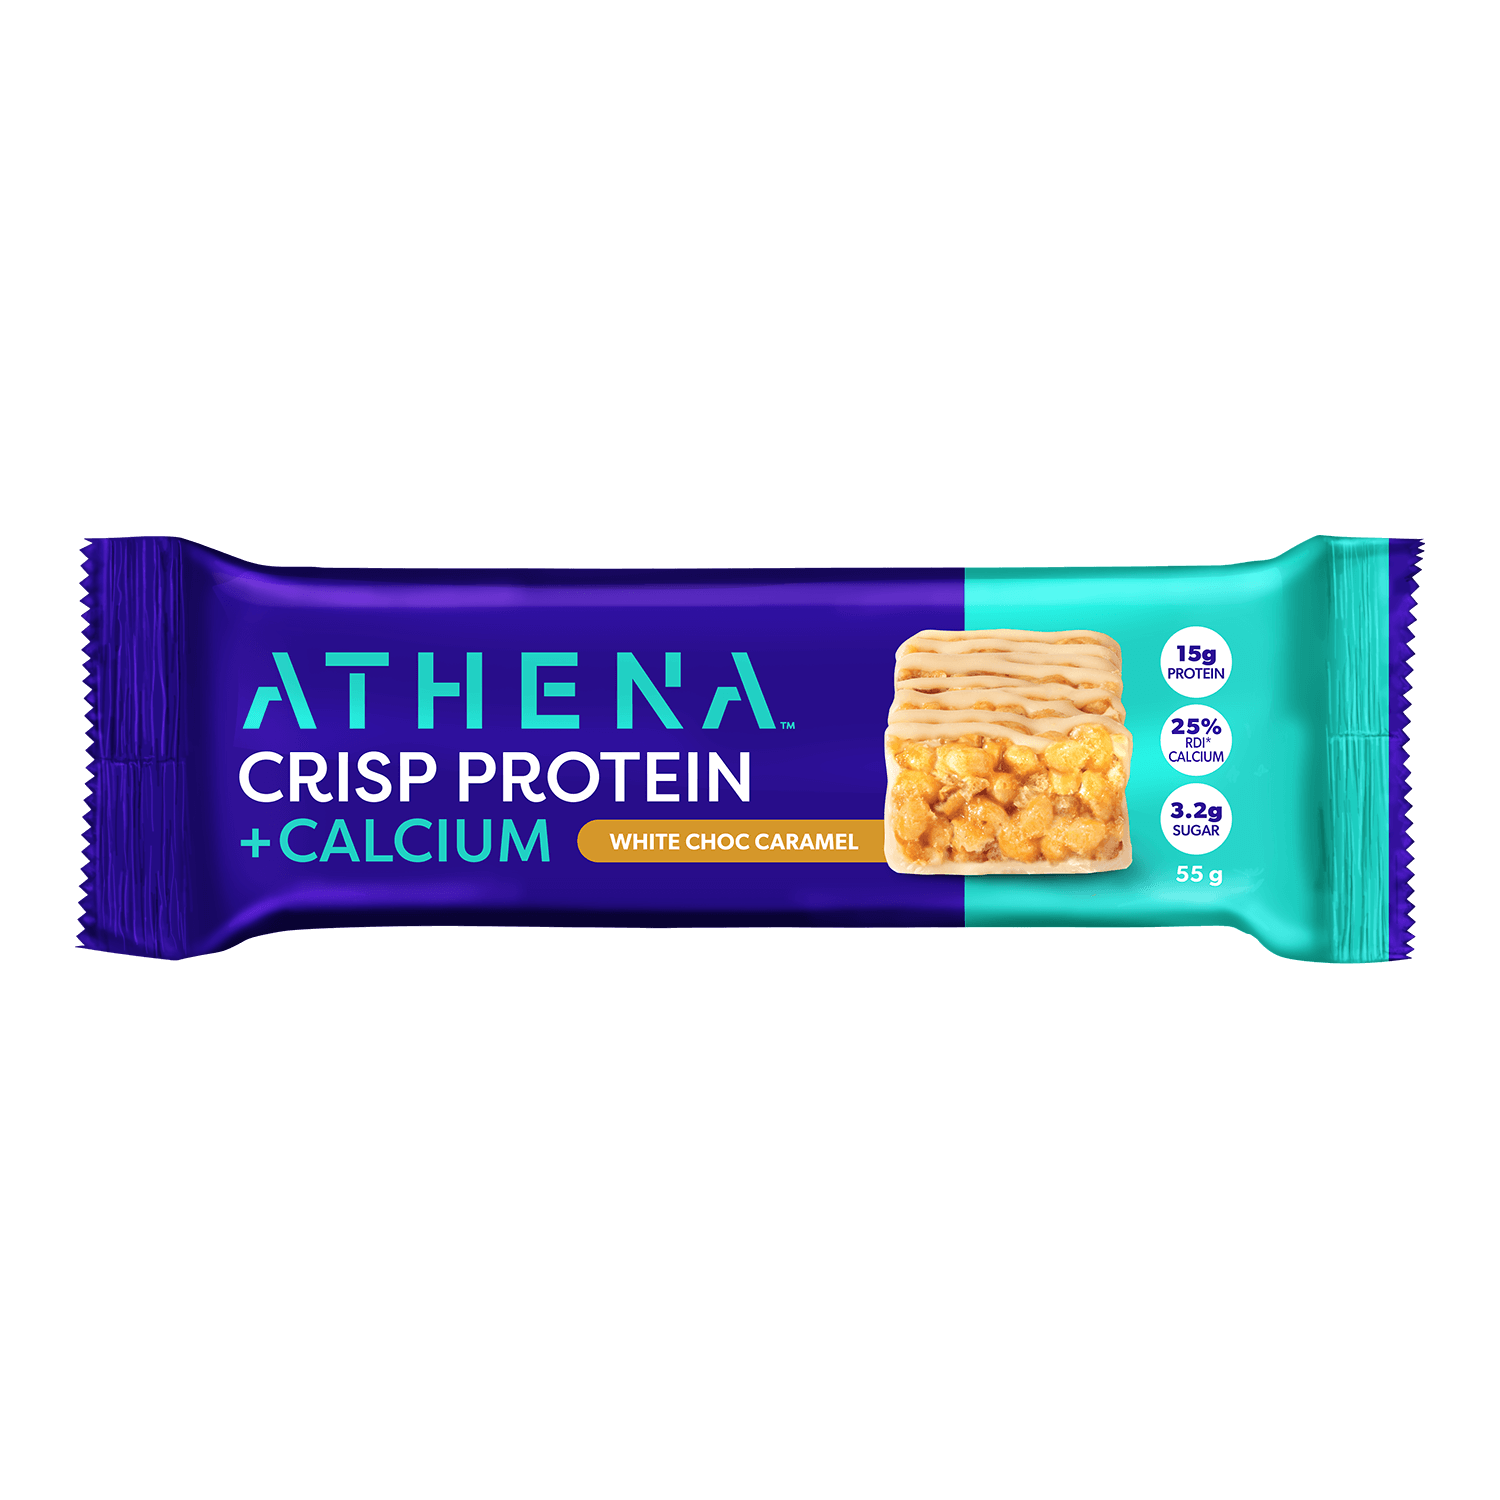 Crisp Protein + Calcium